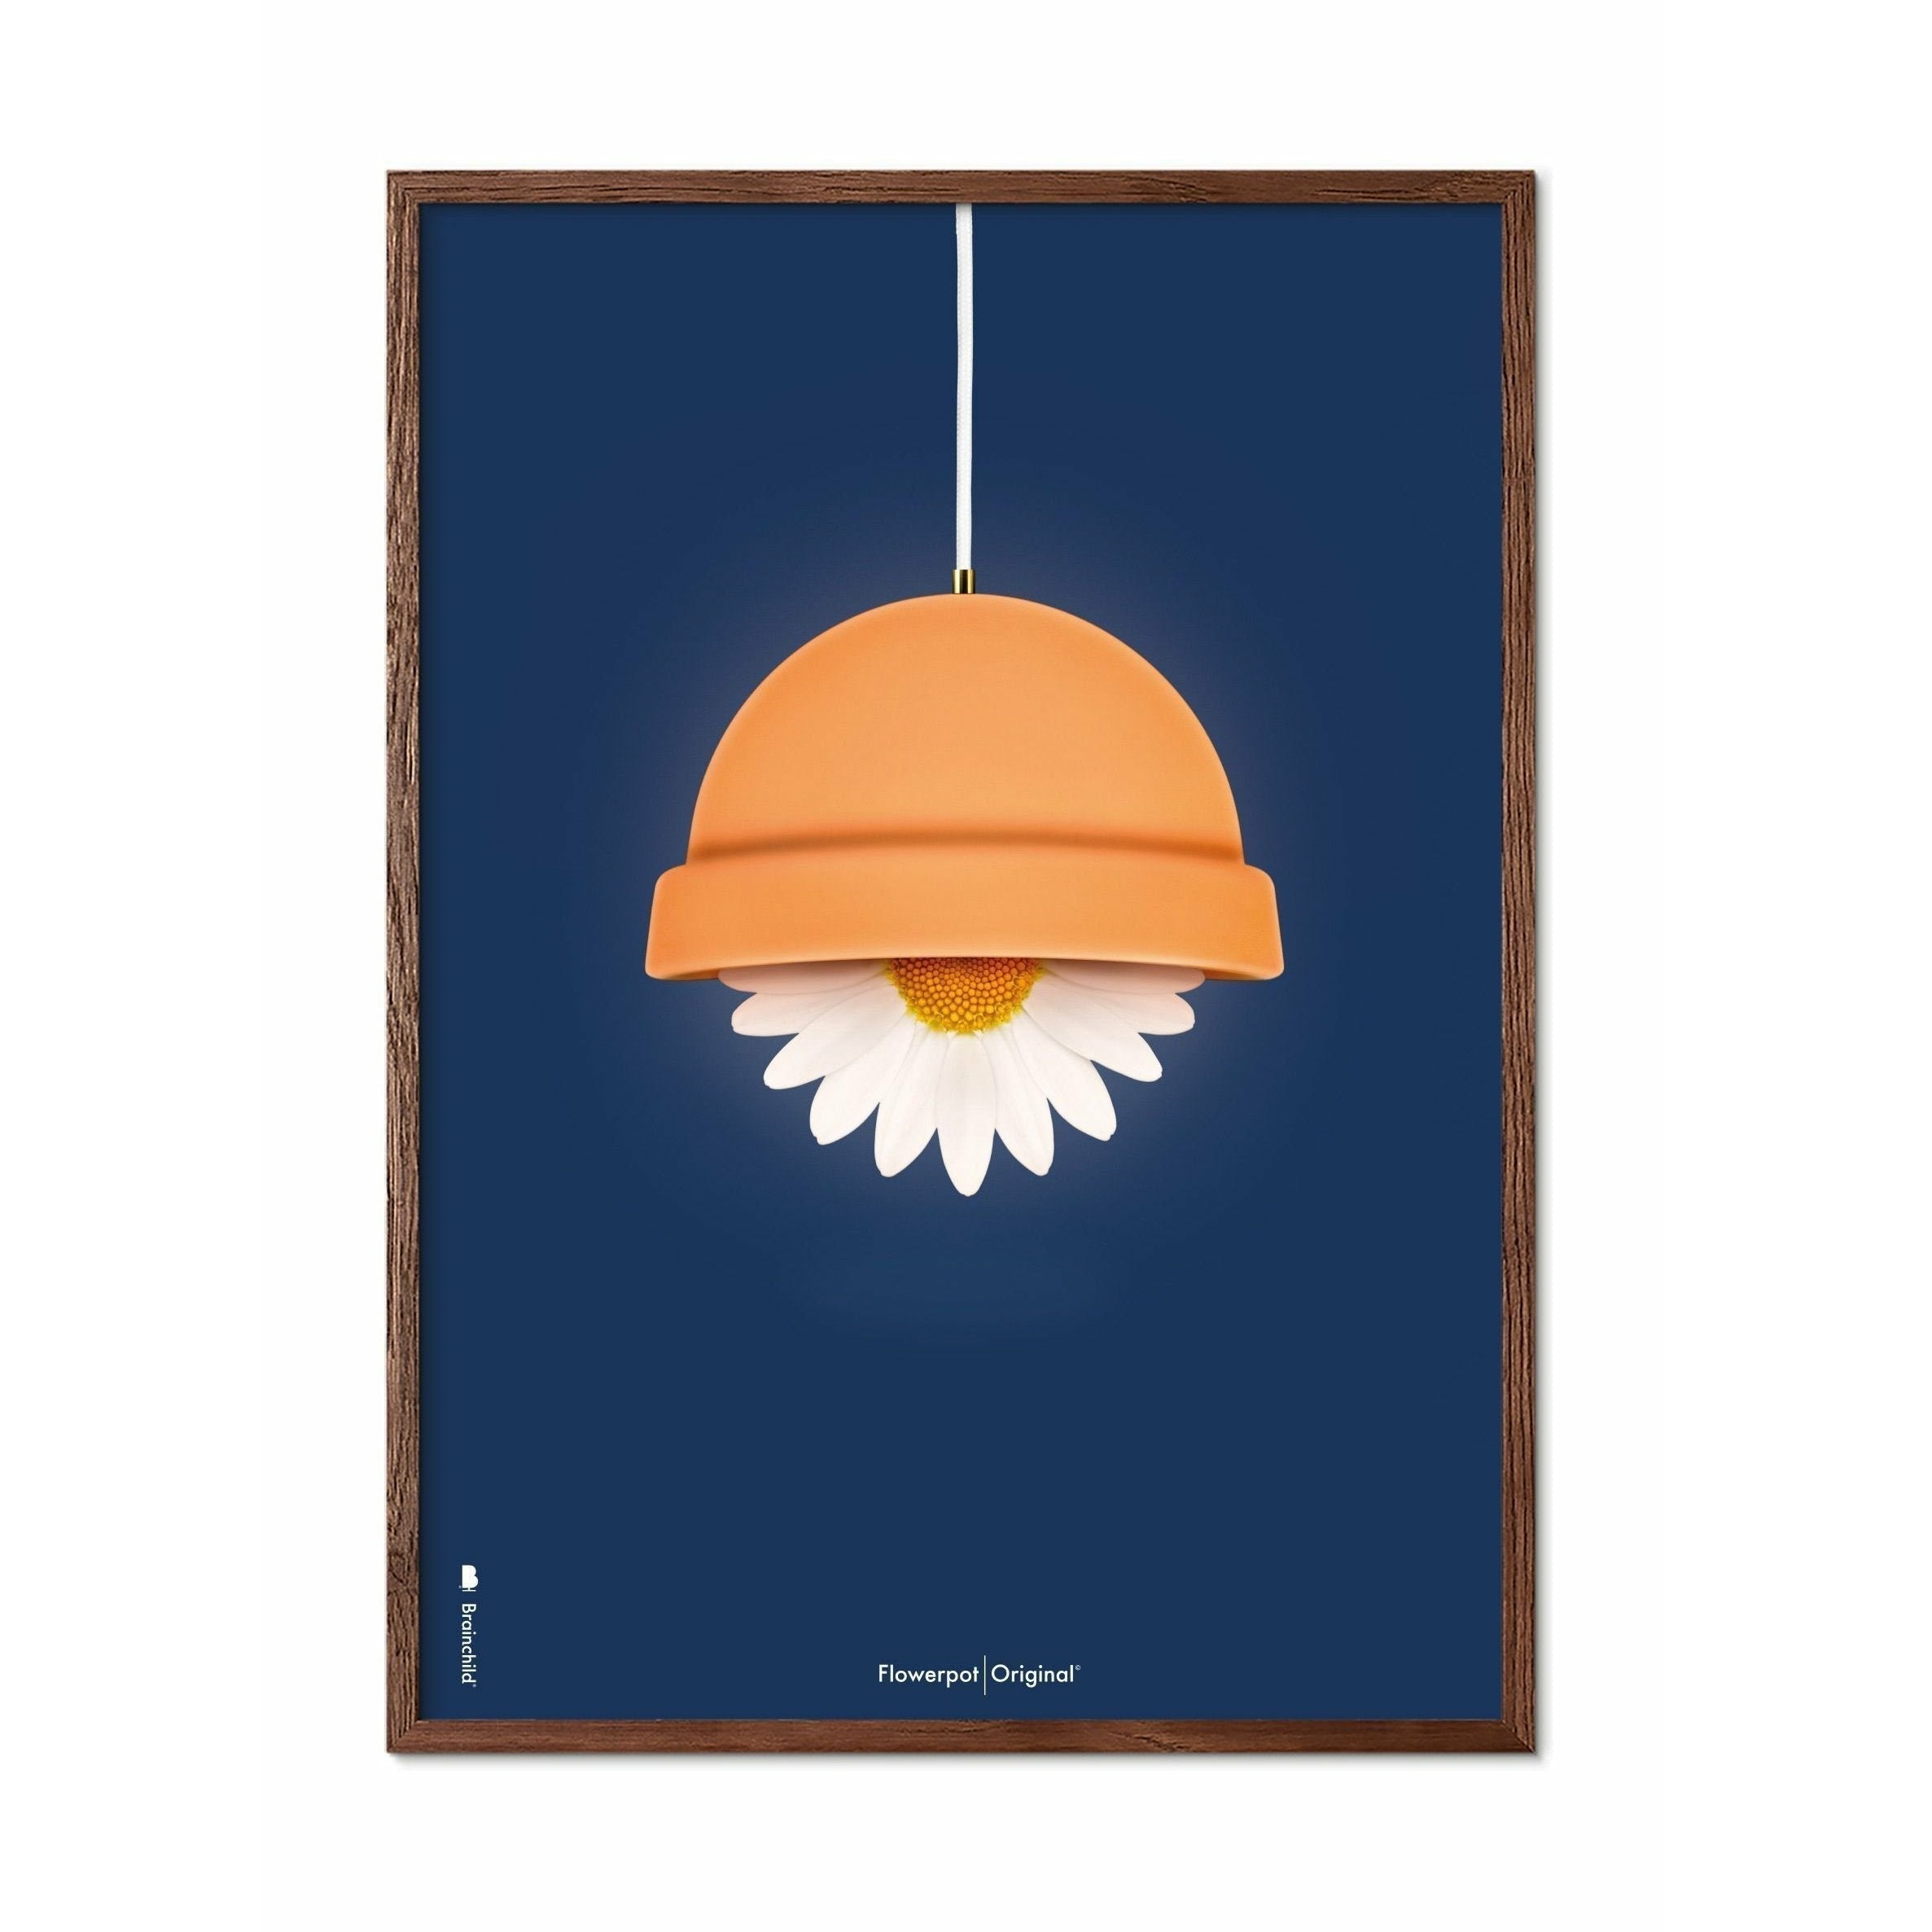 Klasický plakát Brainchild Flowerpot, tmavý dřevěný rám 30x40 cm, tmavě modré pozadí